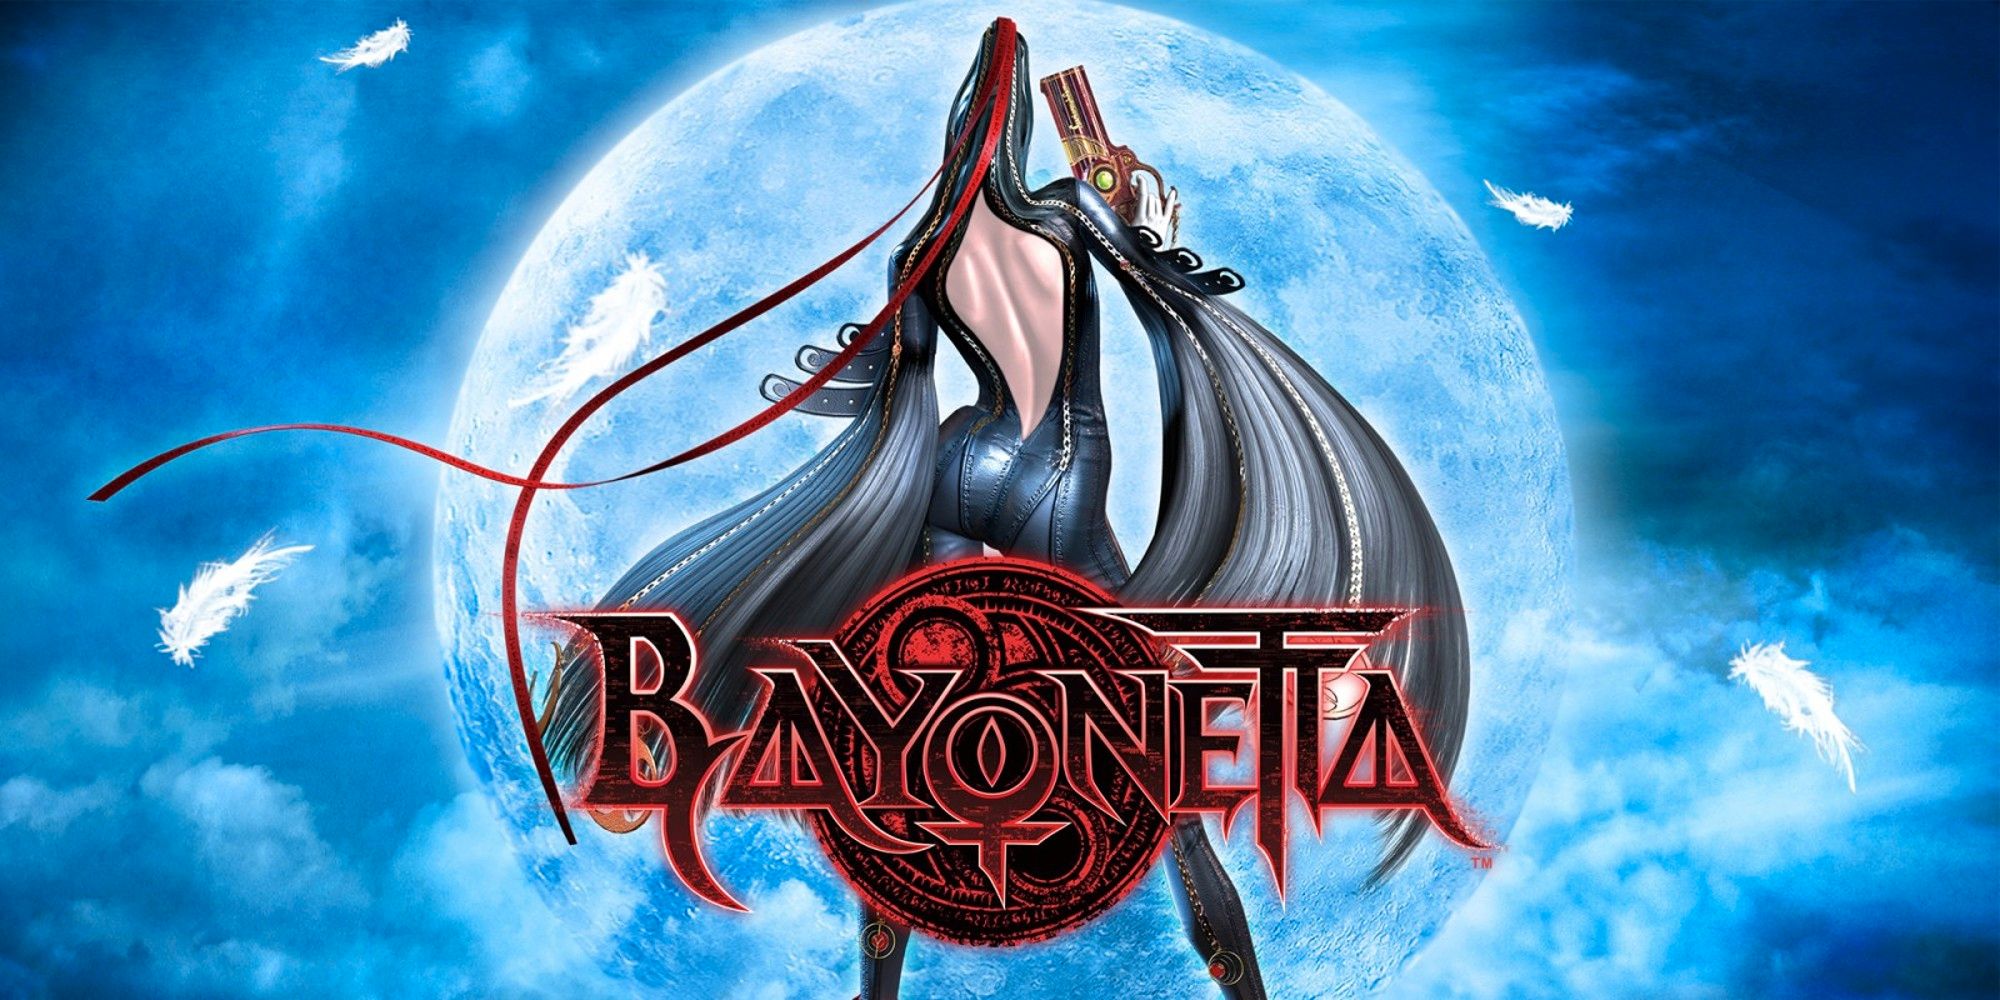 ¿Cuánto tiempo se tarda en vencer a Bayonetta?